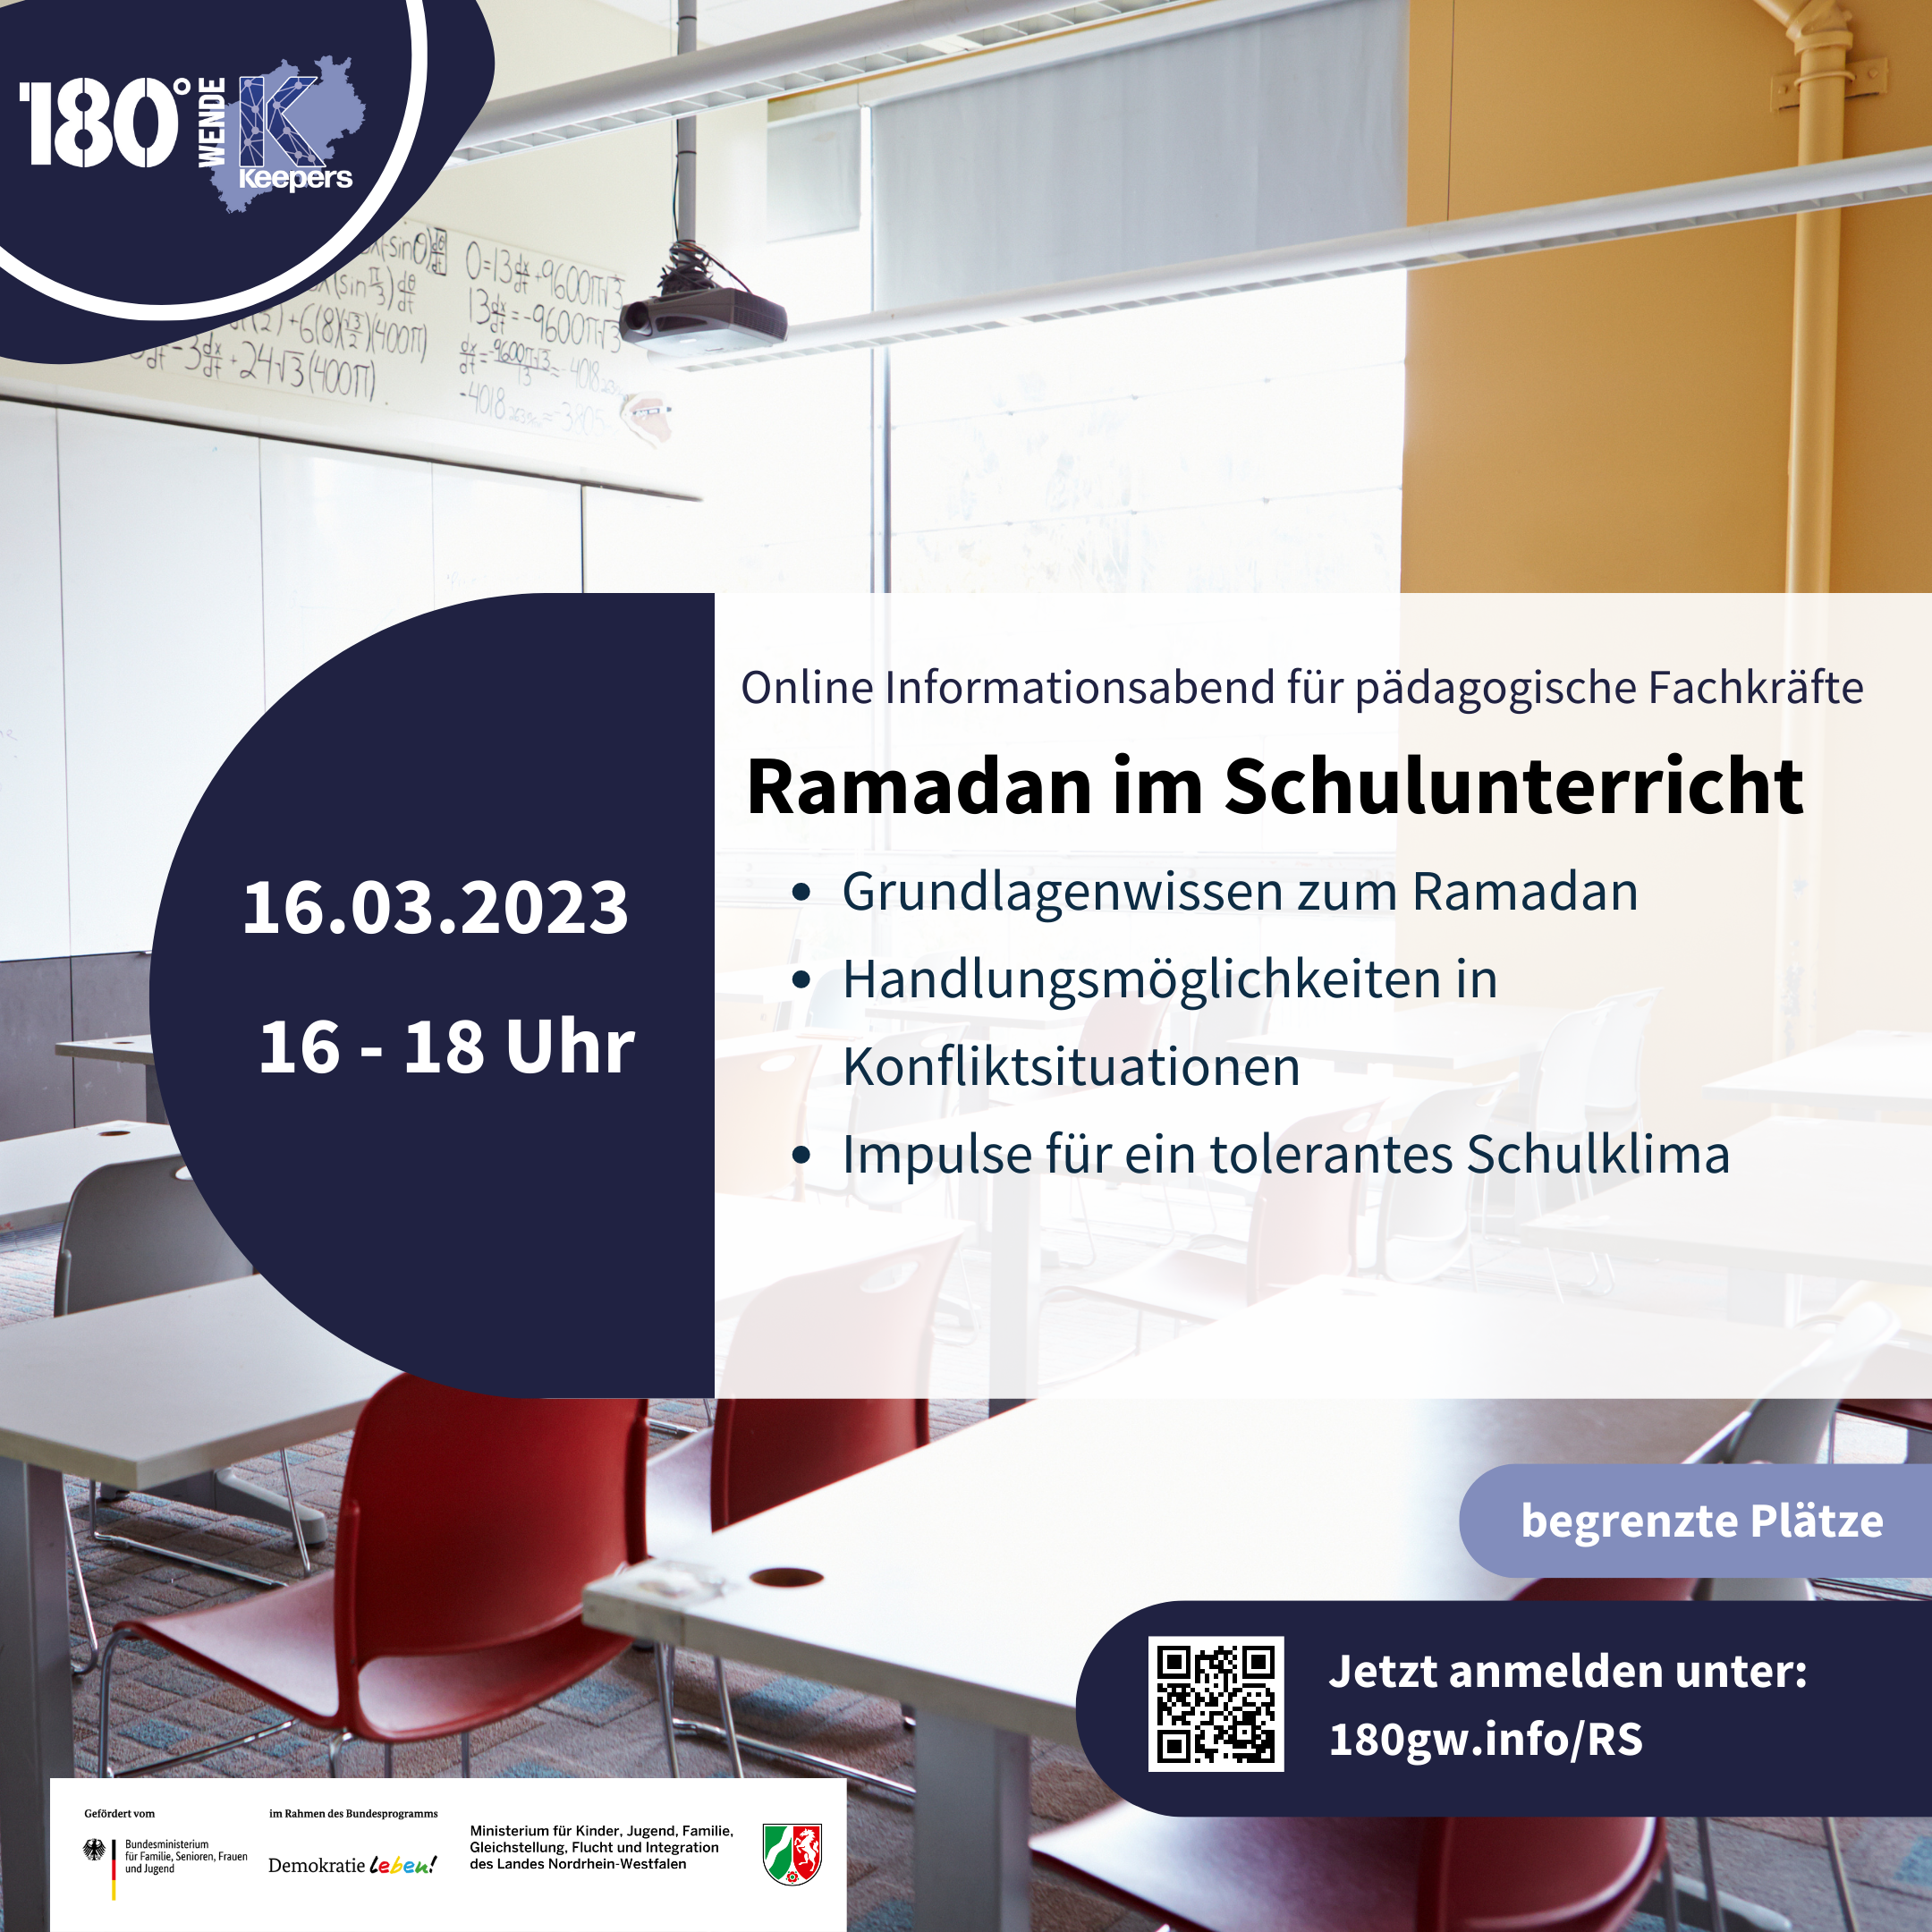 Flyer für die Fortbildung "Wege in die Radikalisierung" am 29.11.2022